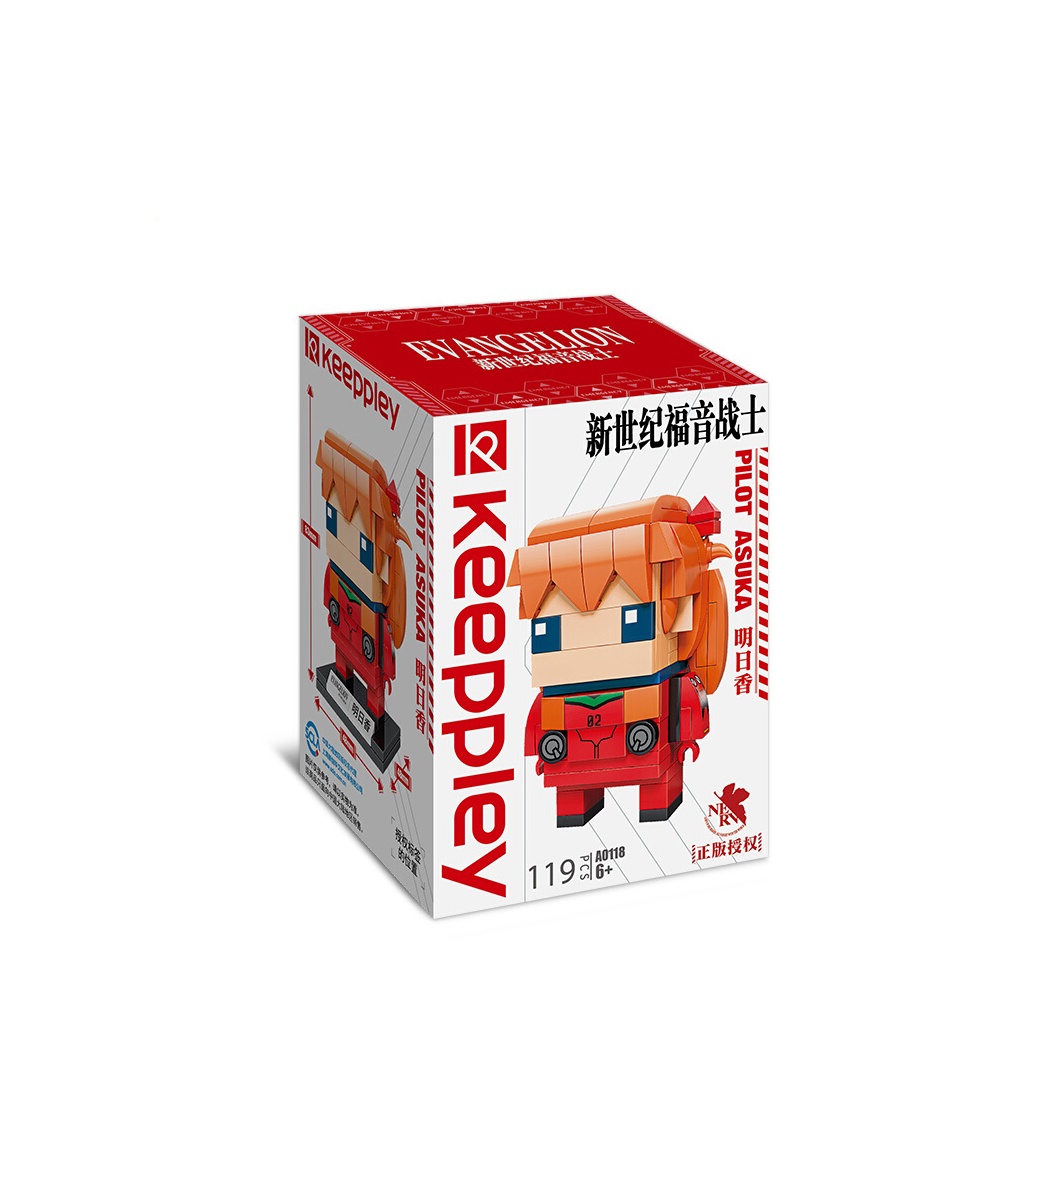 Keeppley K20505 Ensemble de jouets de blocs de construction Naruto Gaara Vs  Deidara 